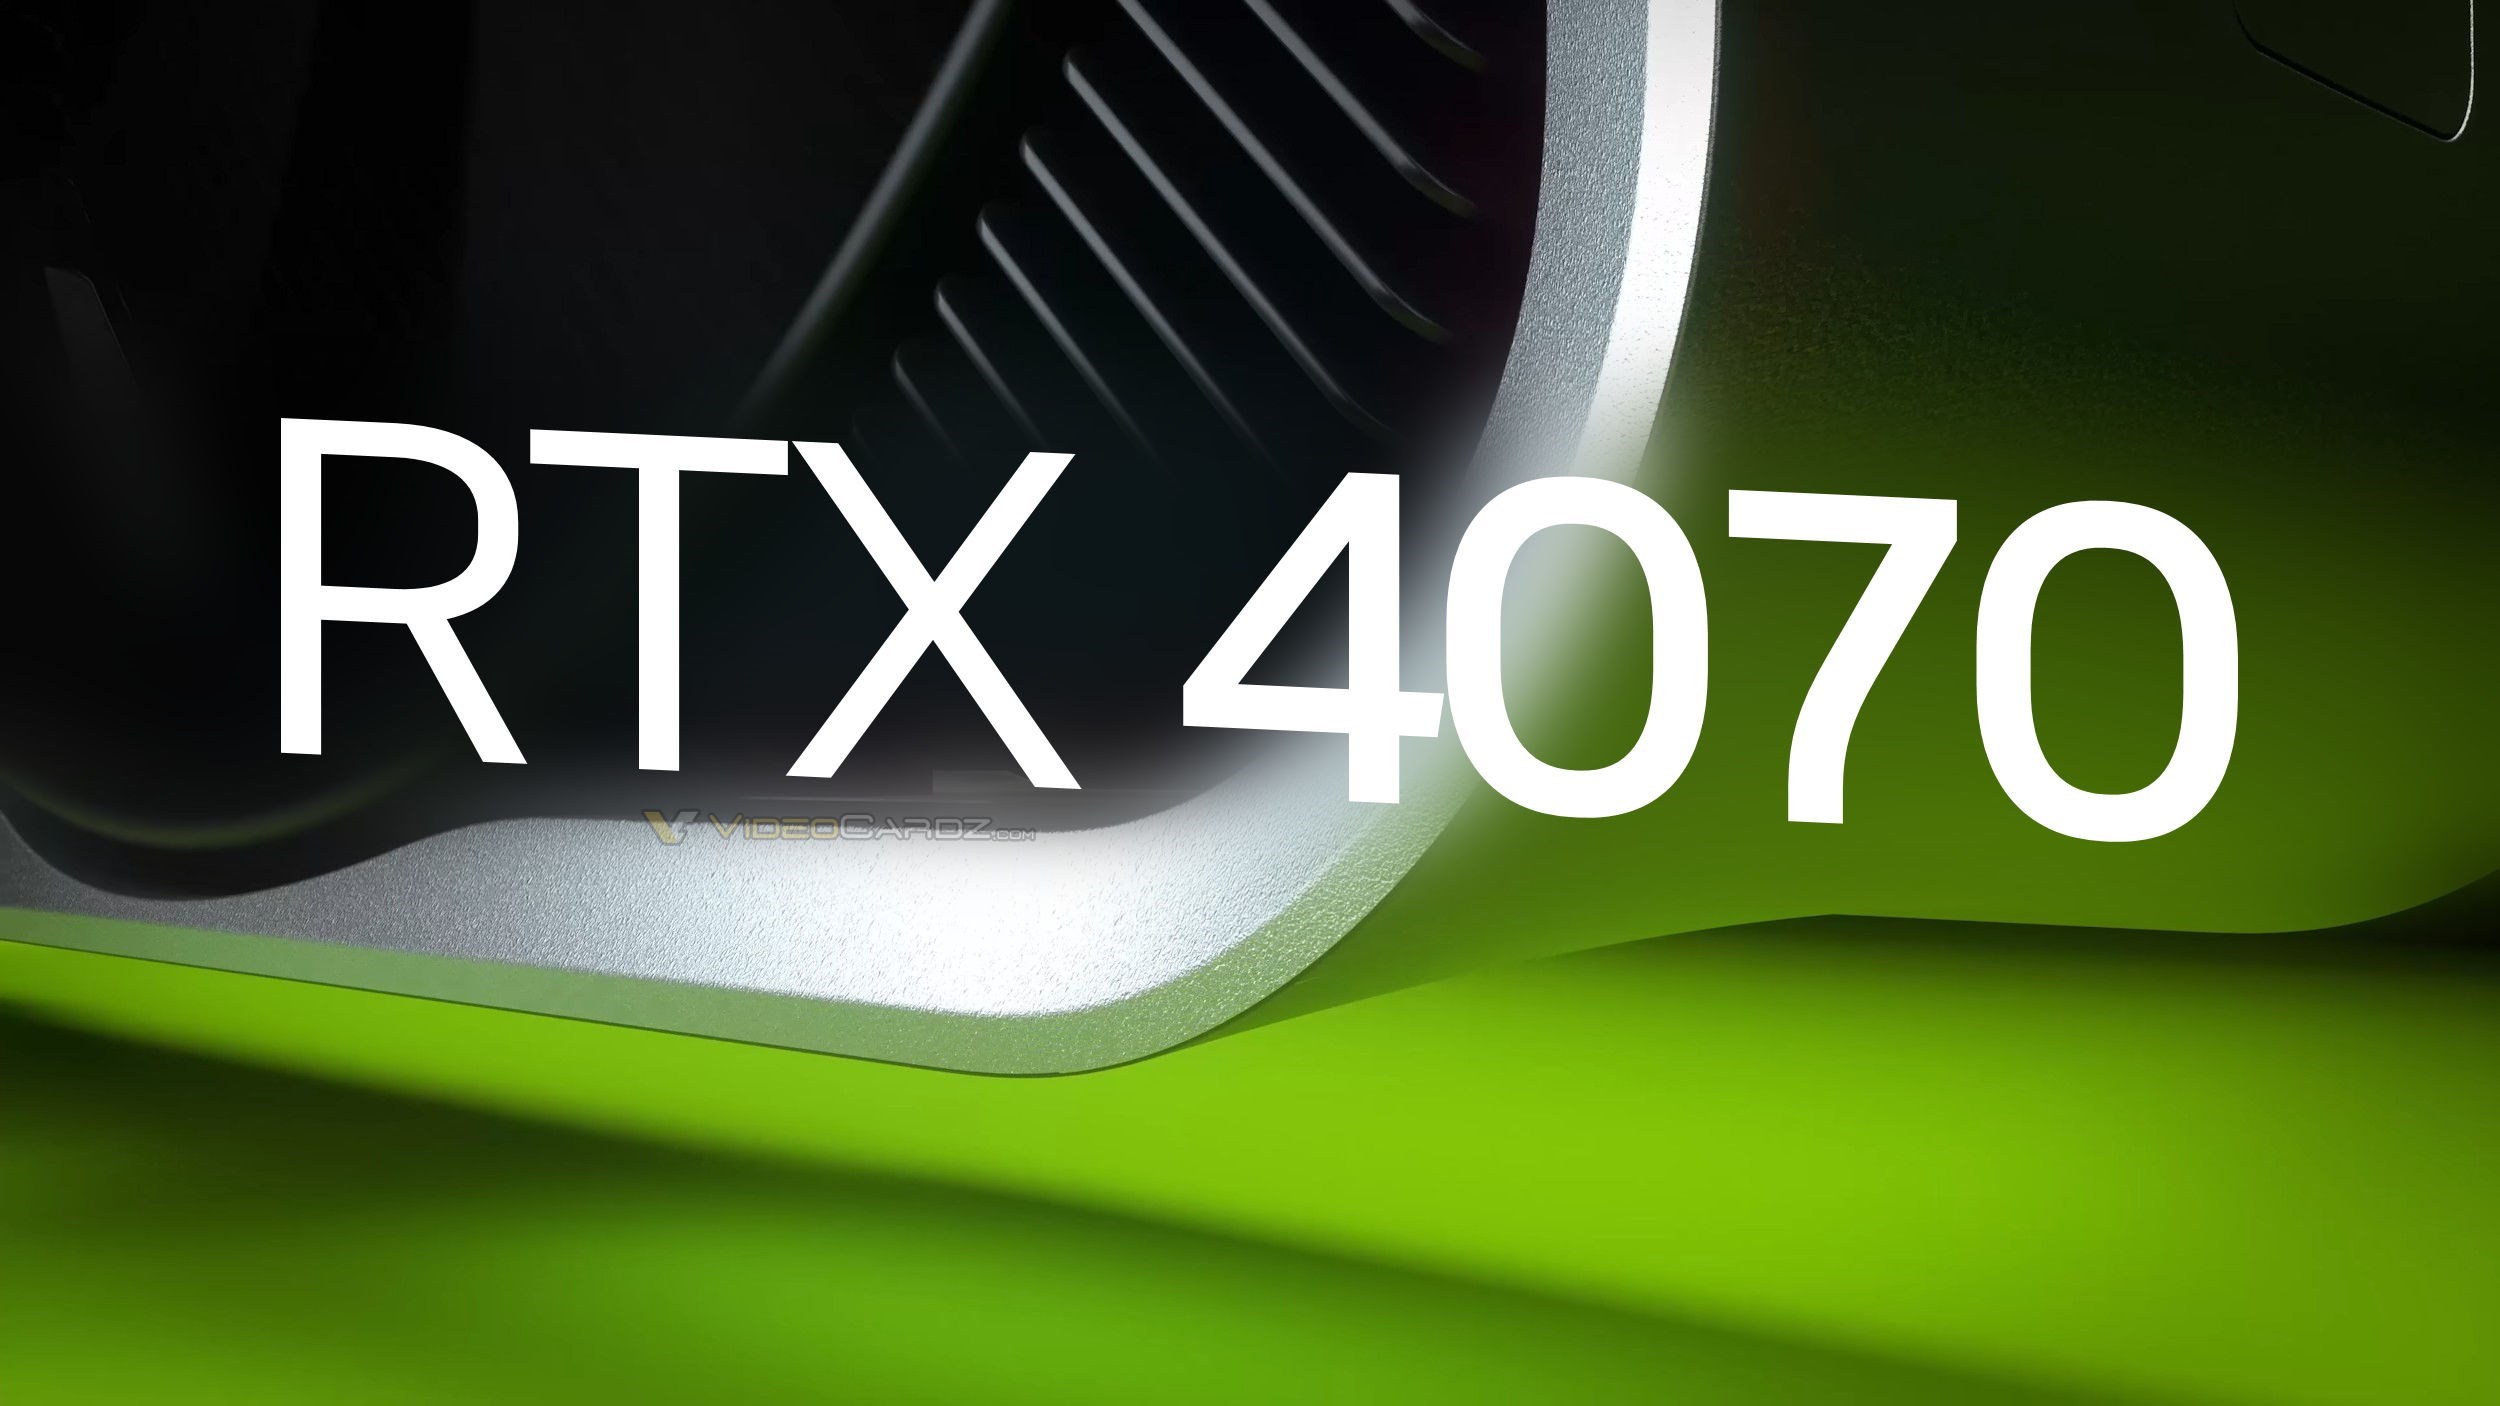 RTX 4070 özellikleri netleşmeye başladı!